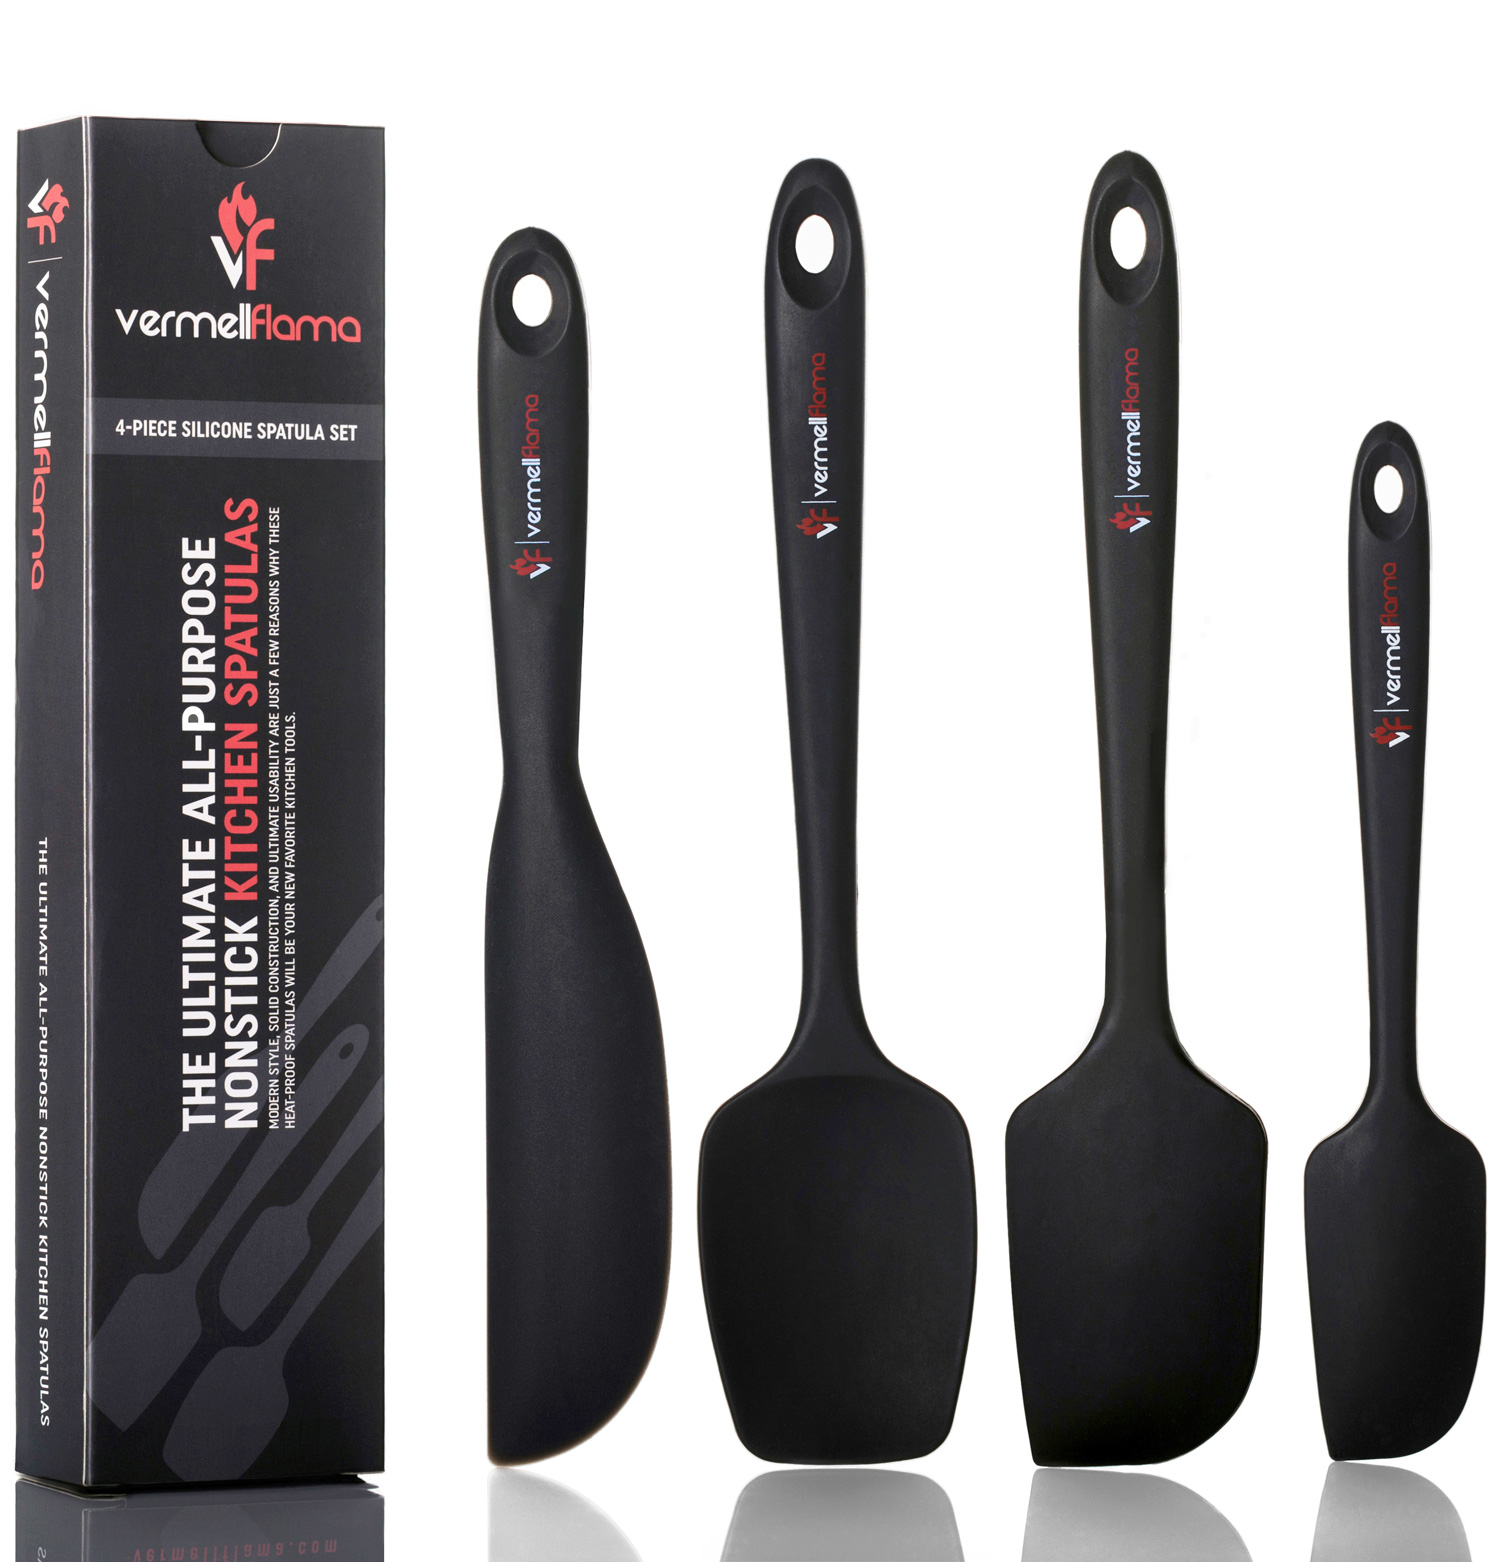 black rubber spatula